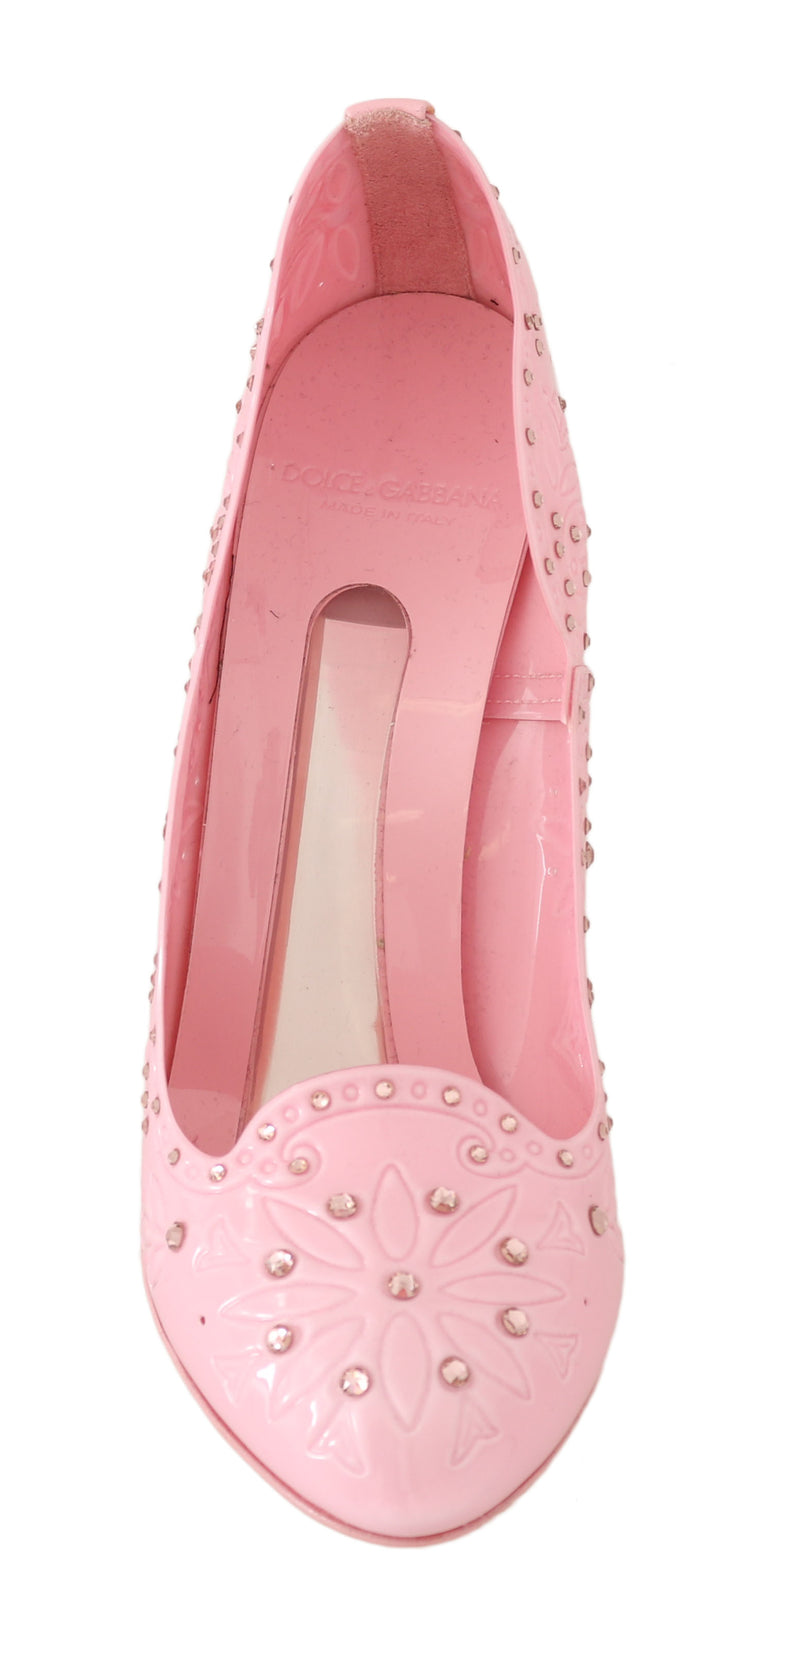 CINDERELLA Pink Crystal Heels